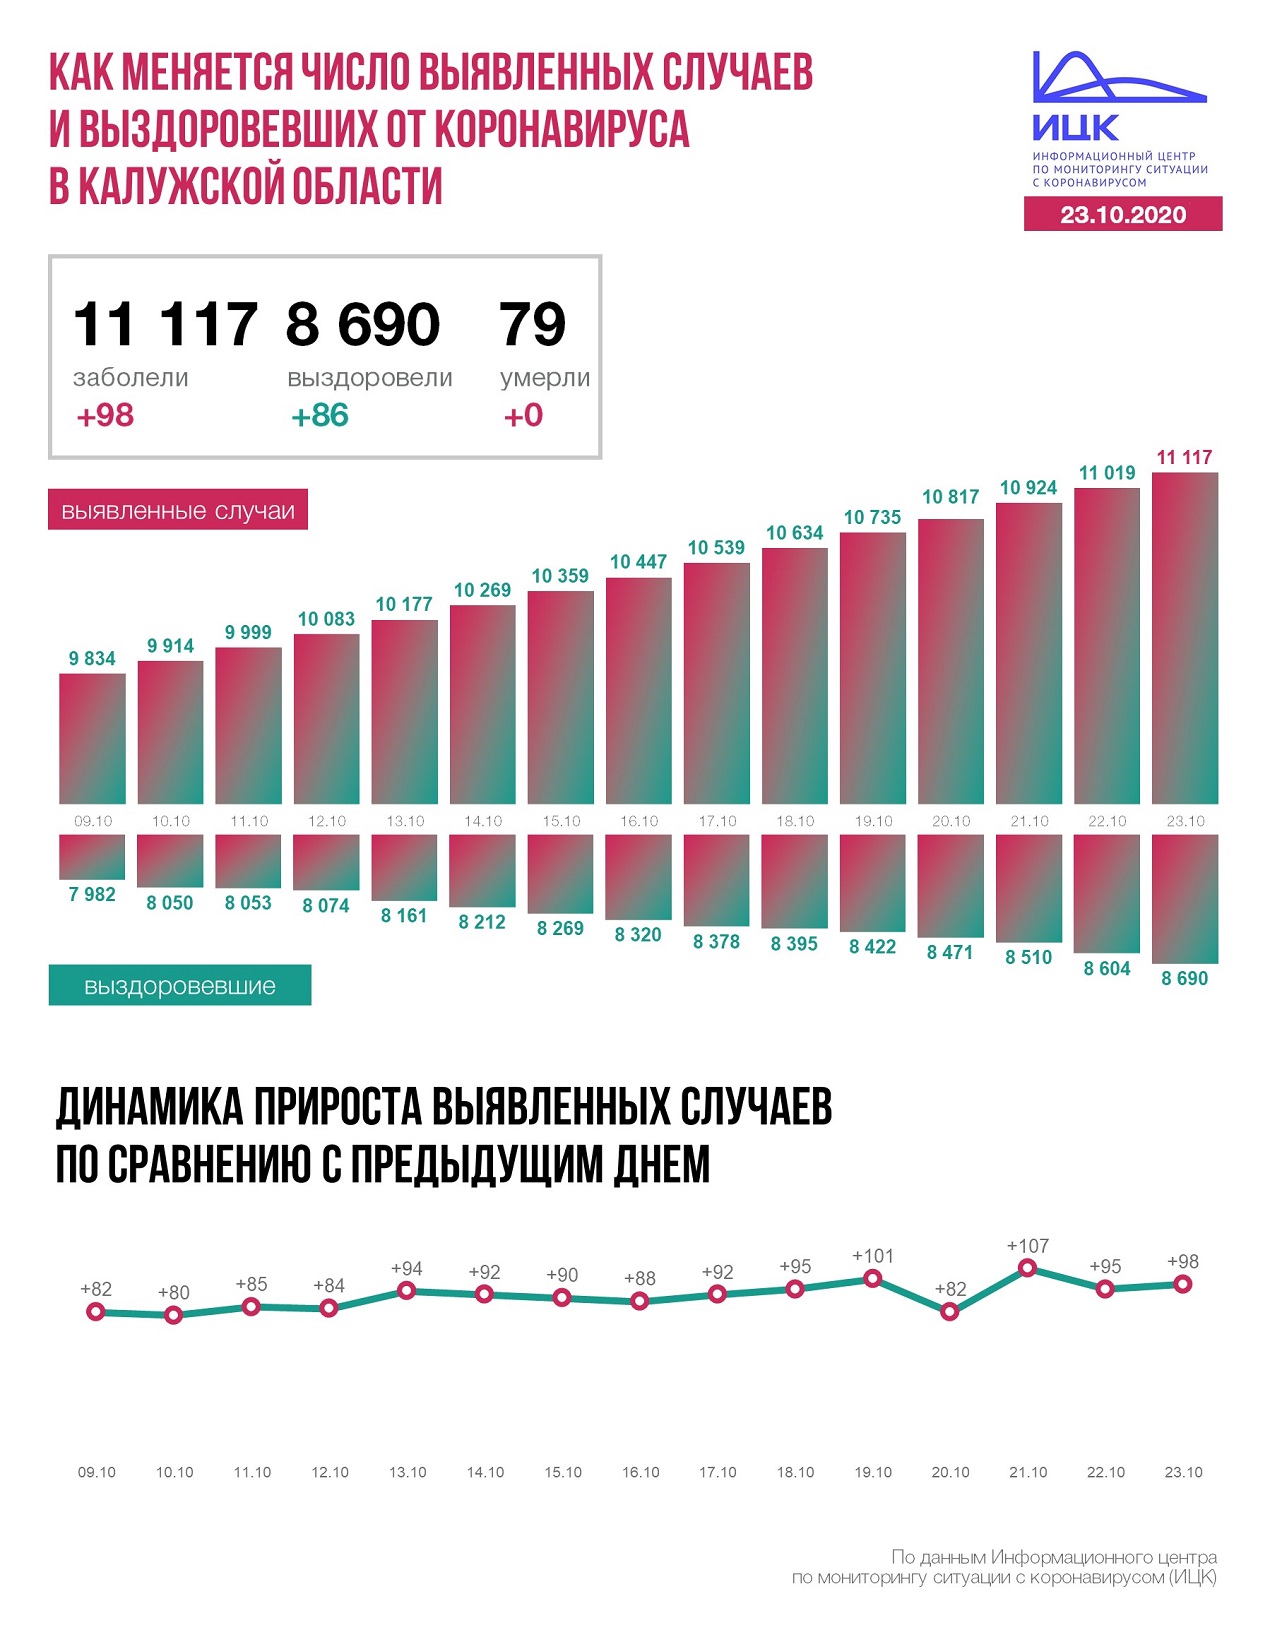 Официальные данные федерального оперативного штаба по коронавирусу в Калужской области на 23 октября 2020 года.